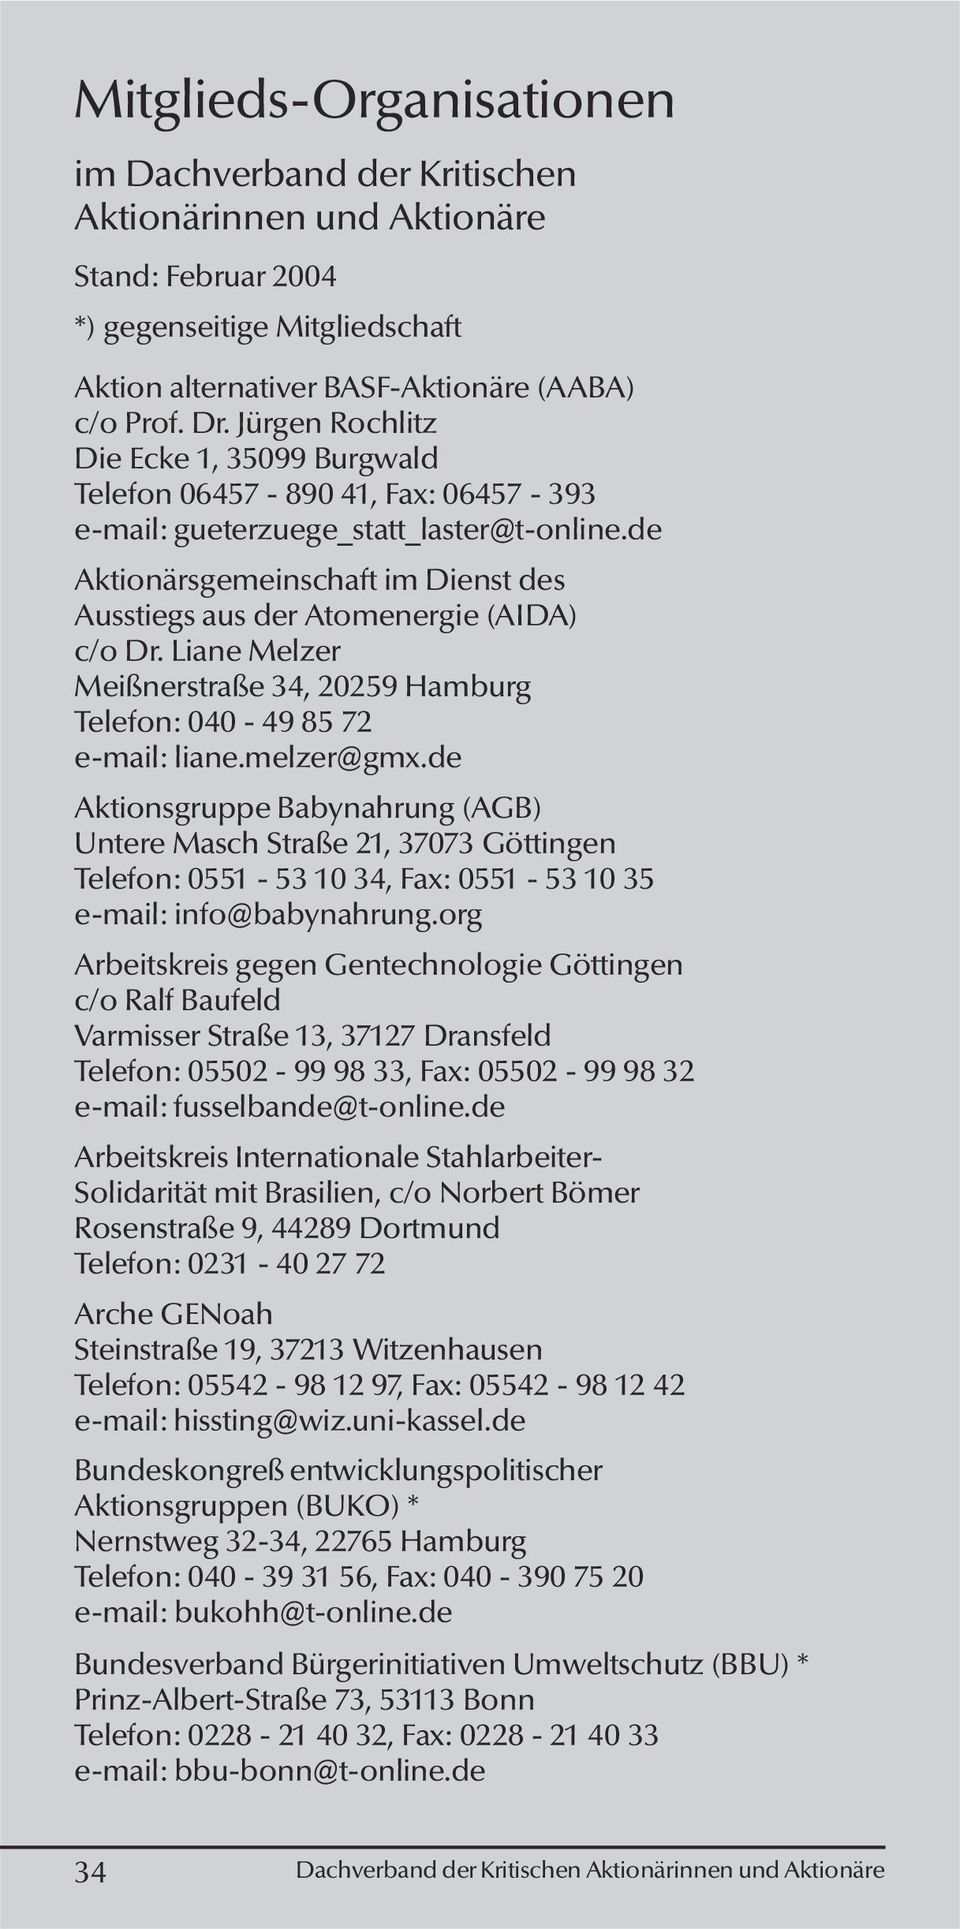 de Aktionärsgemeinschaft im Dienst des Ausstiegs aus der Atomenergie (AIDA) c/o Dr. Liane Melzer Meißnerstraße 34, 20259 Hamburg Telefon: 040-49 85 72 e-mail: liane.melzer@gmx.